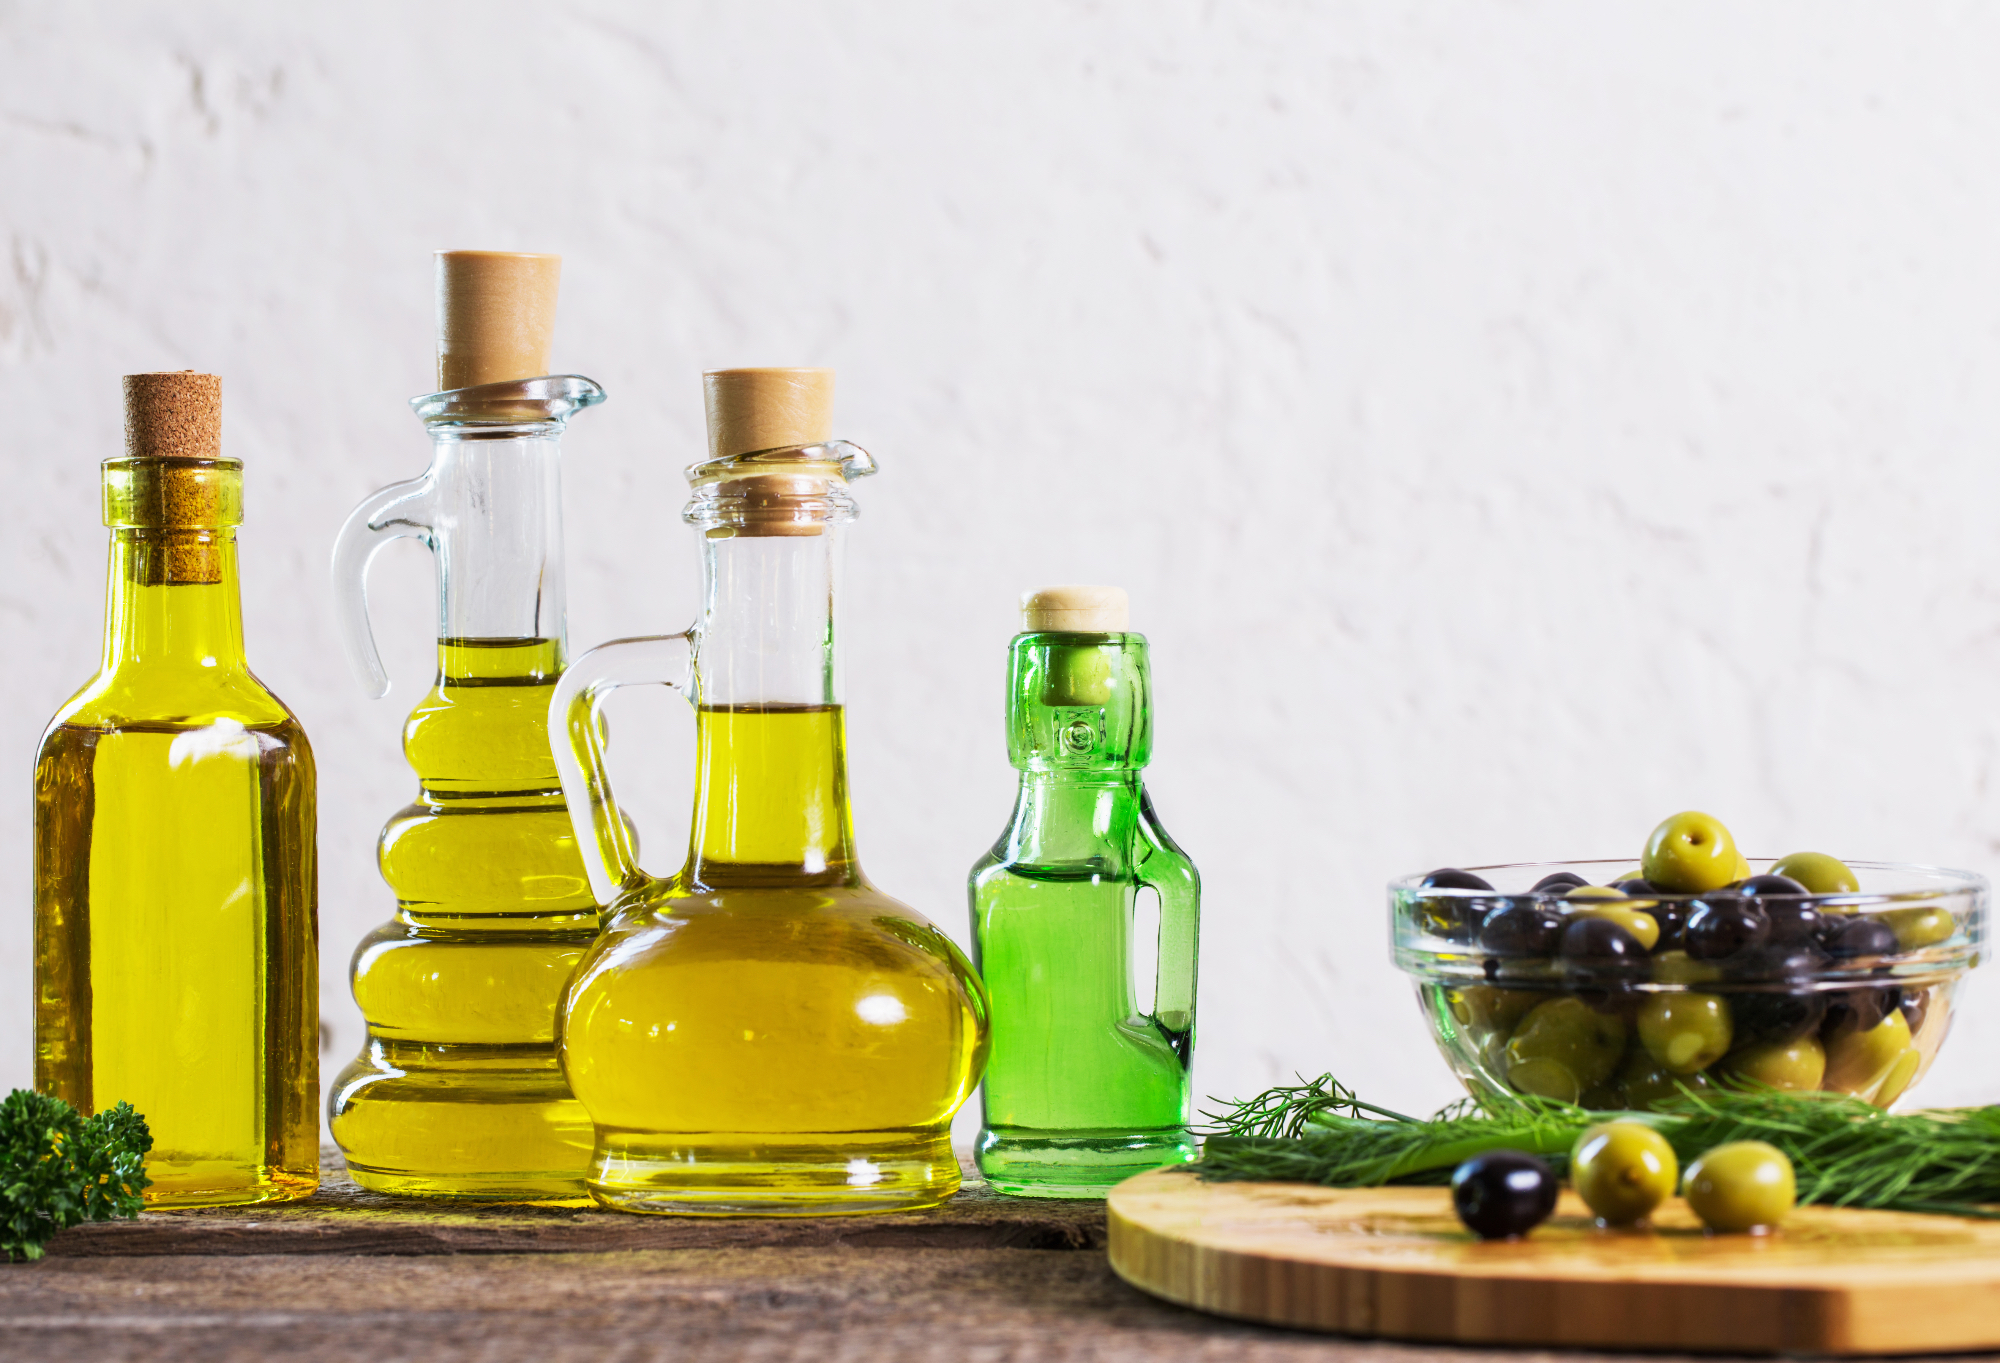 Ekstra deviško oljčno olje slovenske Istre je postalo naše najljubše olje